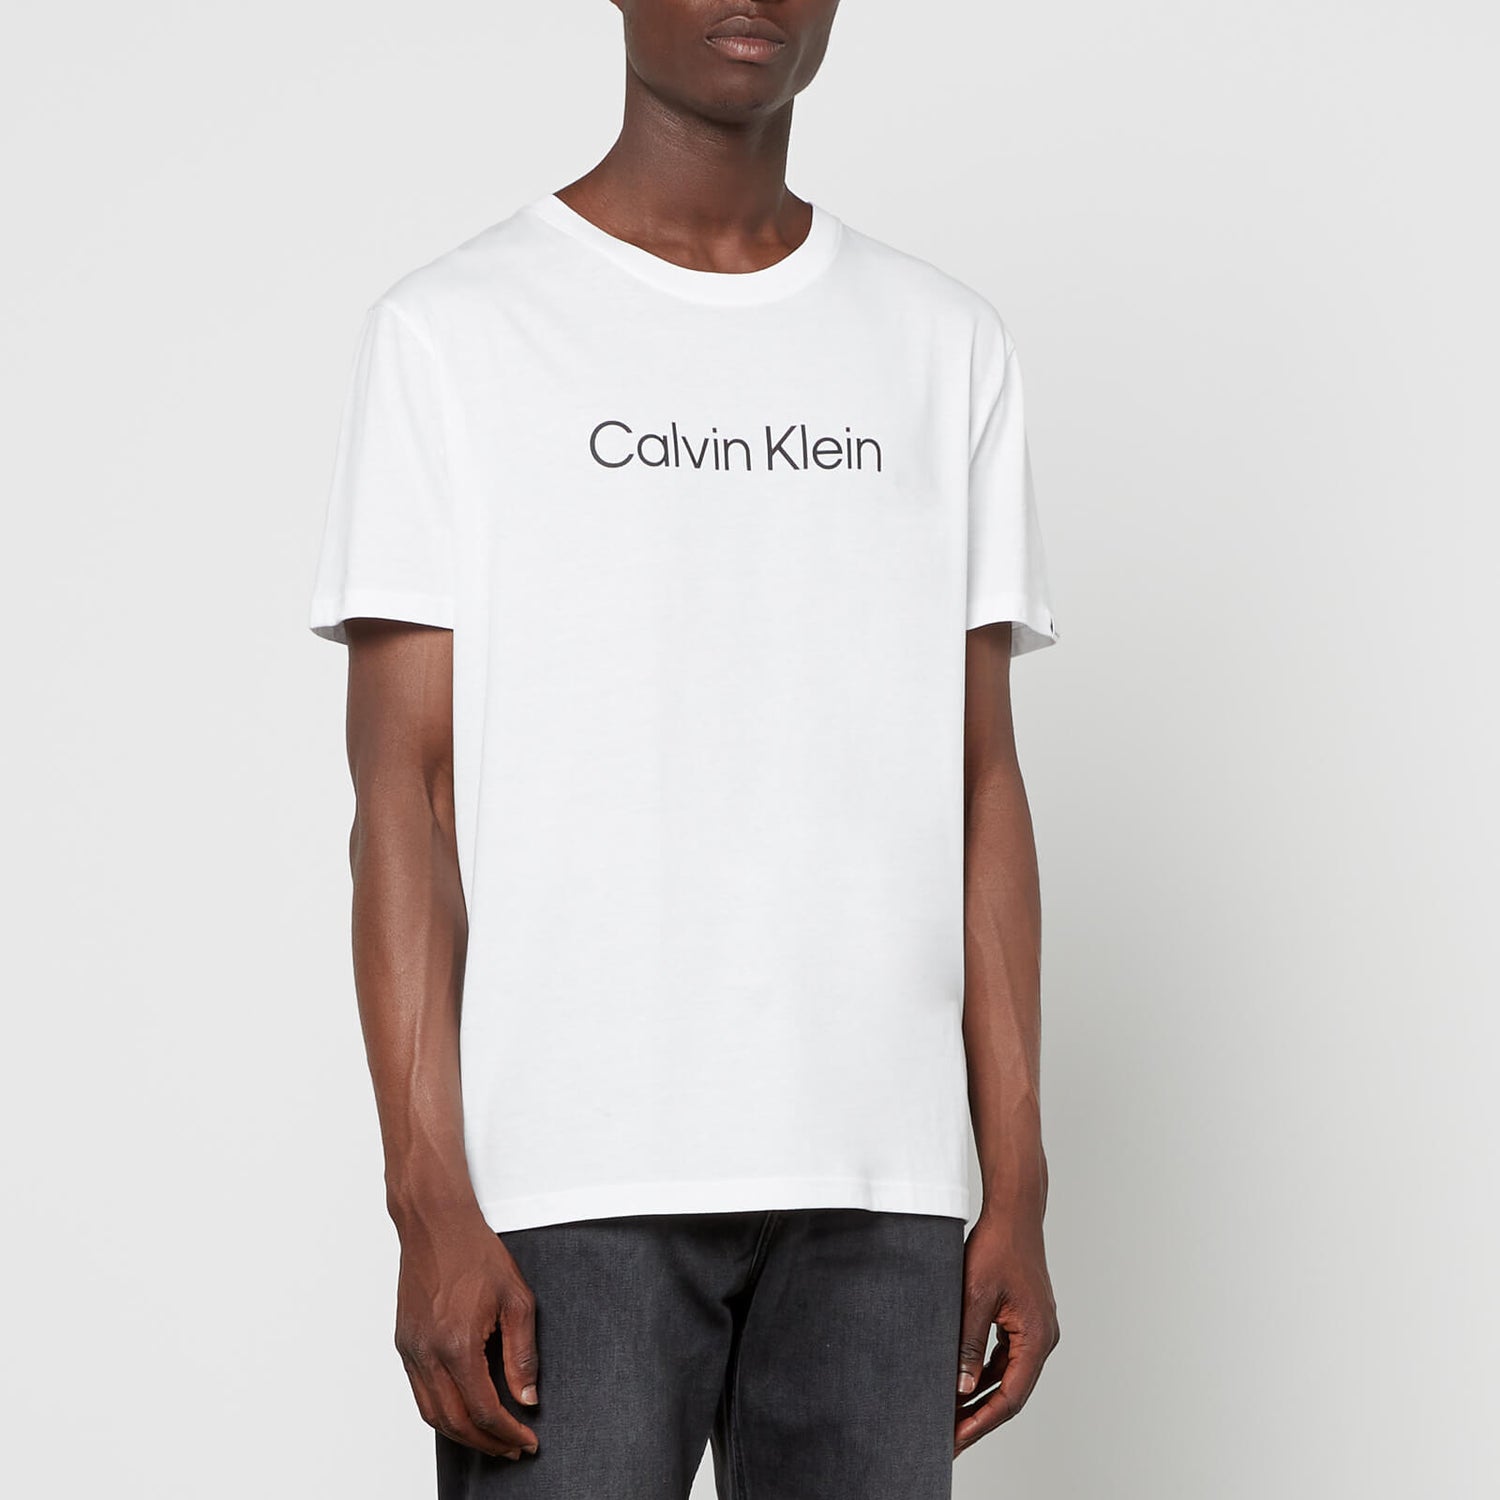 Calvin Klein Relaxed T-shirt - S